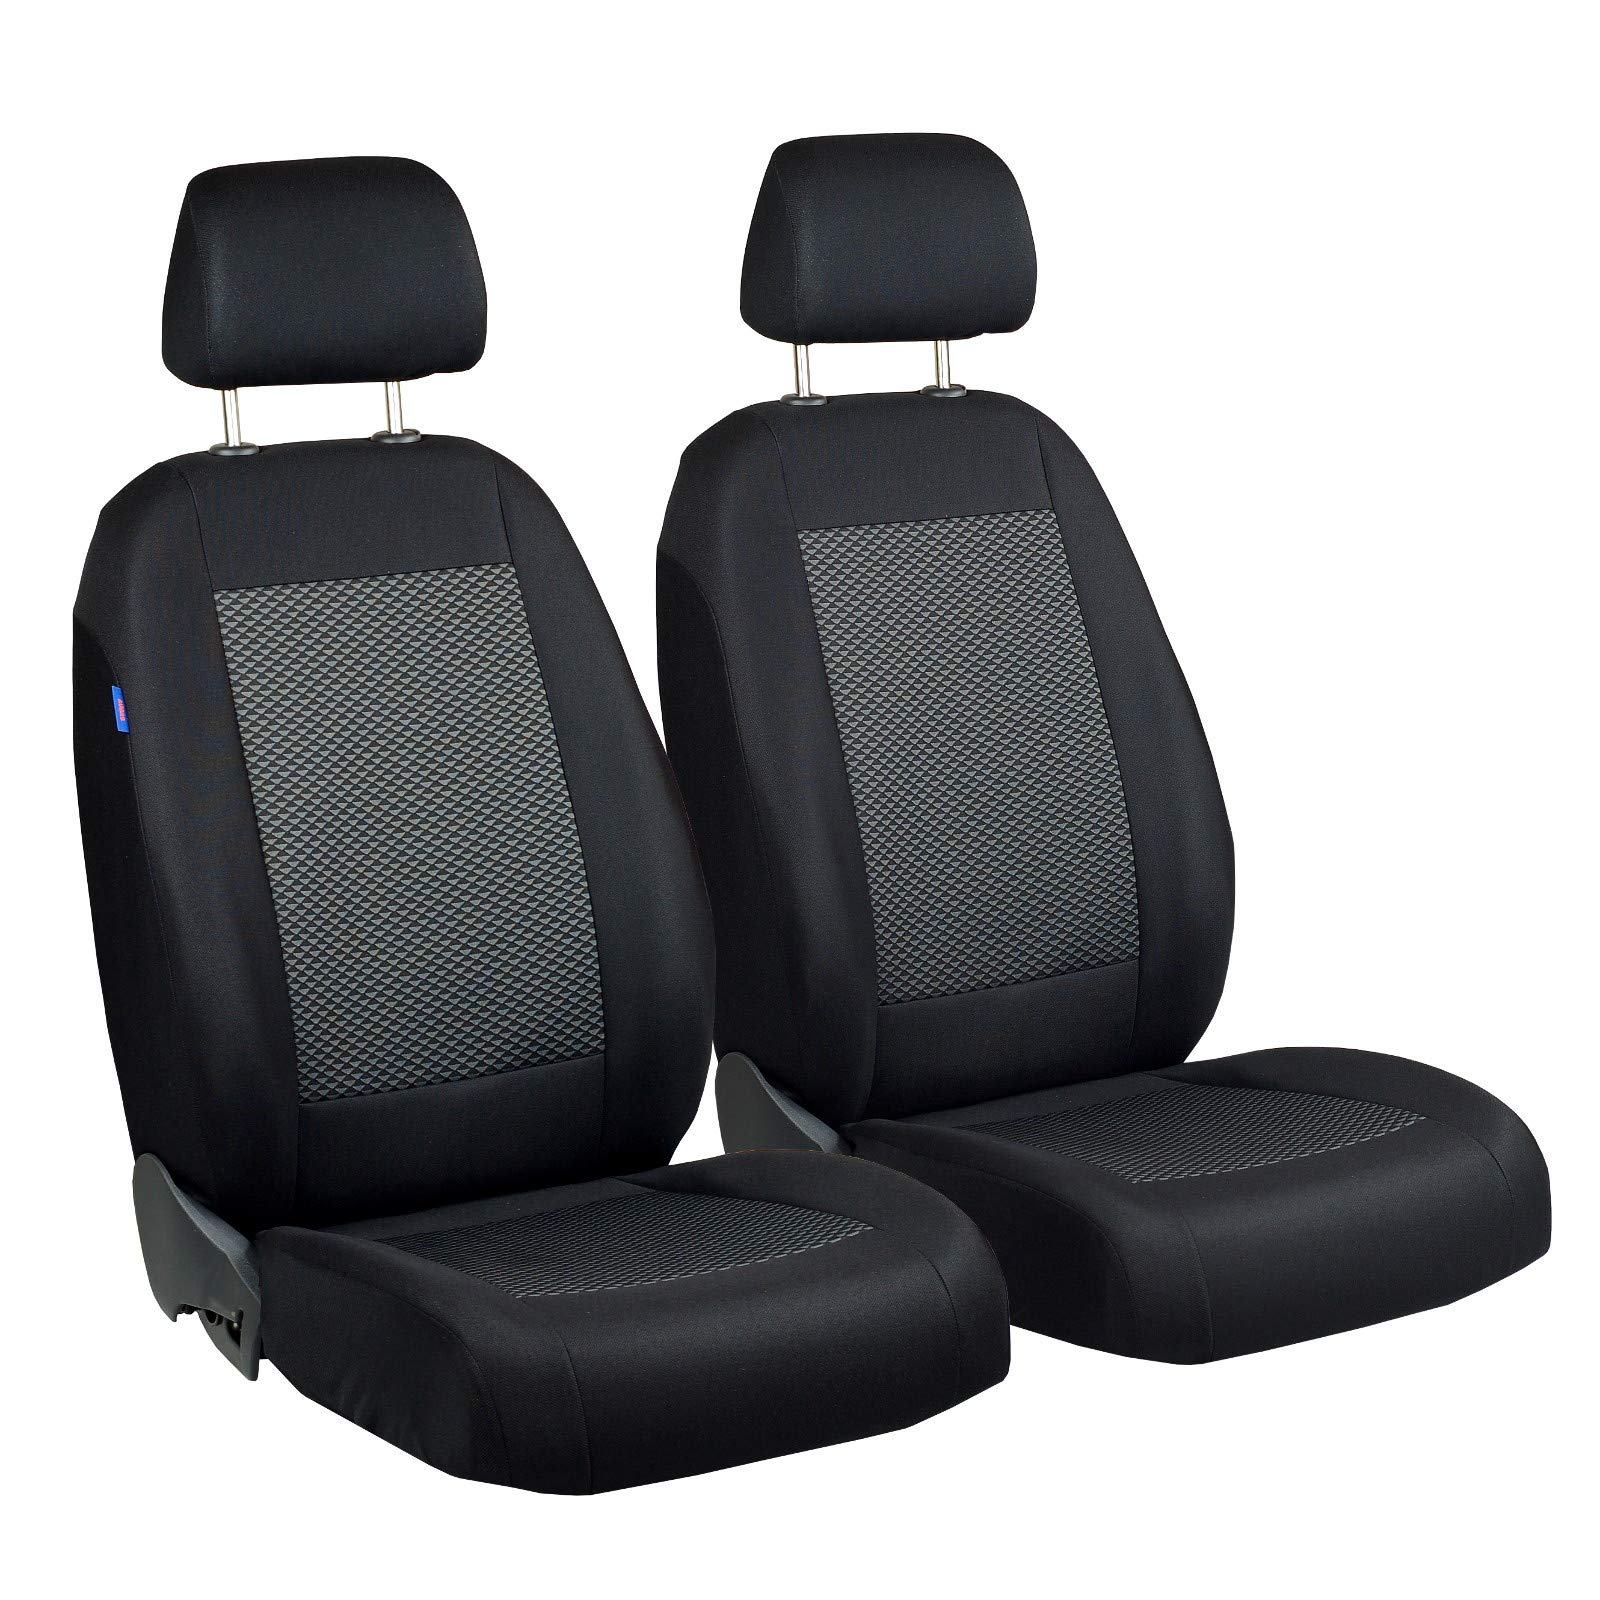 Zakschneider CX5 CX-5 Vorne Sitzbezüge - für Fahrer und Beifahrer - Farbe Premium Schwarz-graue Dreiecke von Zakschneider